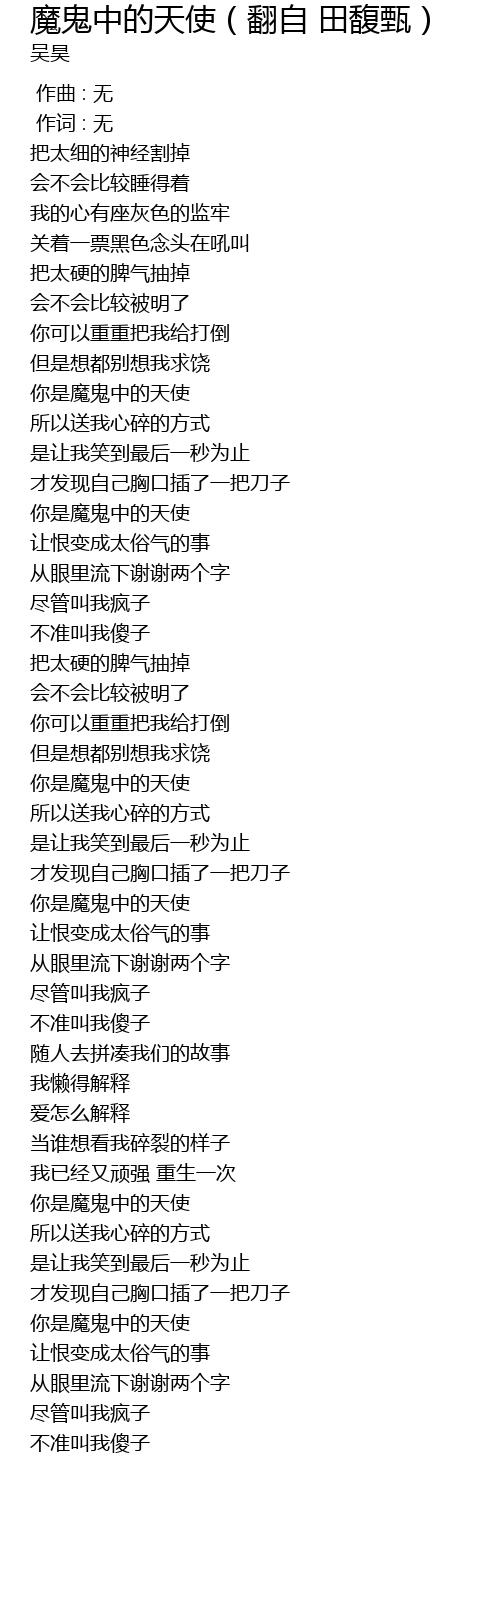 魔鬼中的天使（翻自 田馥甄）  mo gui zhong de tian shi fan zi tian fu zhen Lyrics